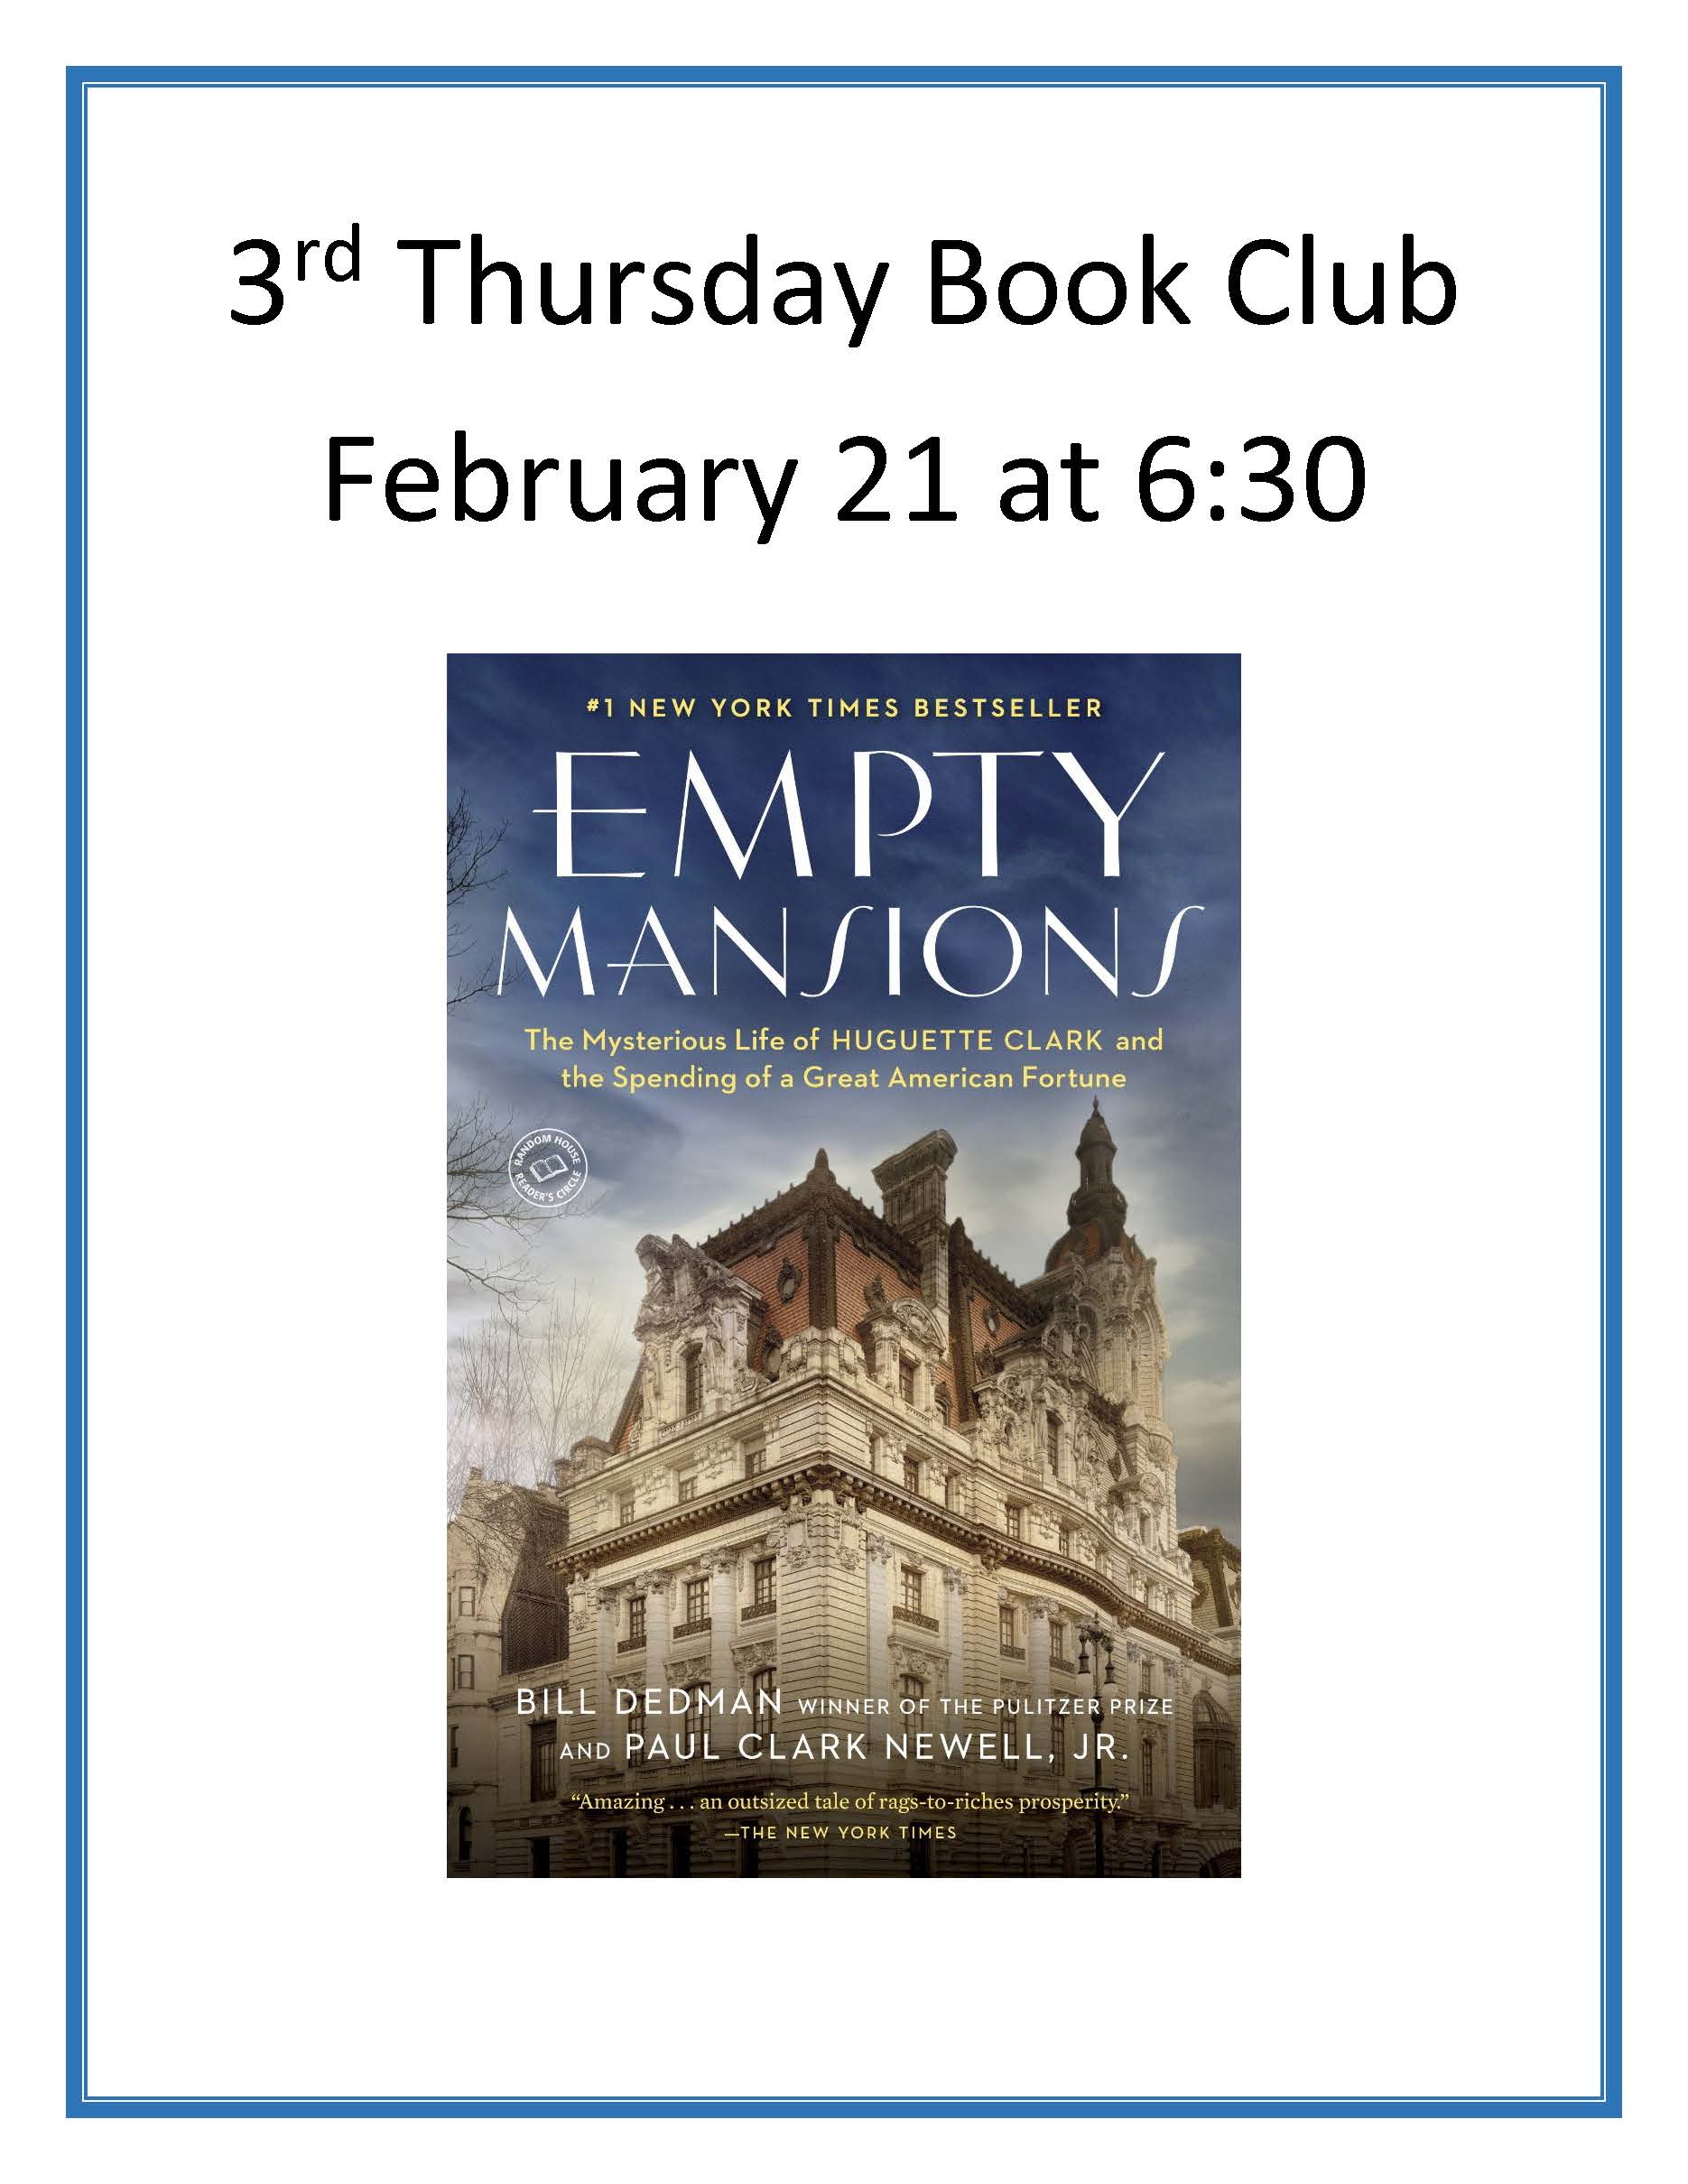 3rd Thursday Book Club january 2019.jpg